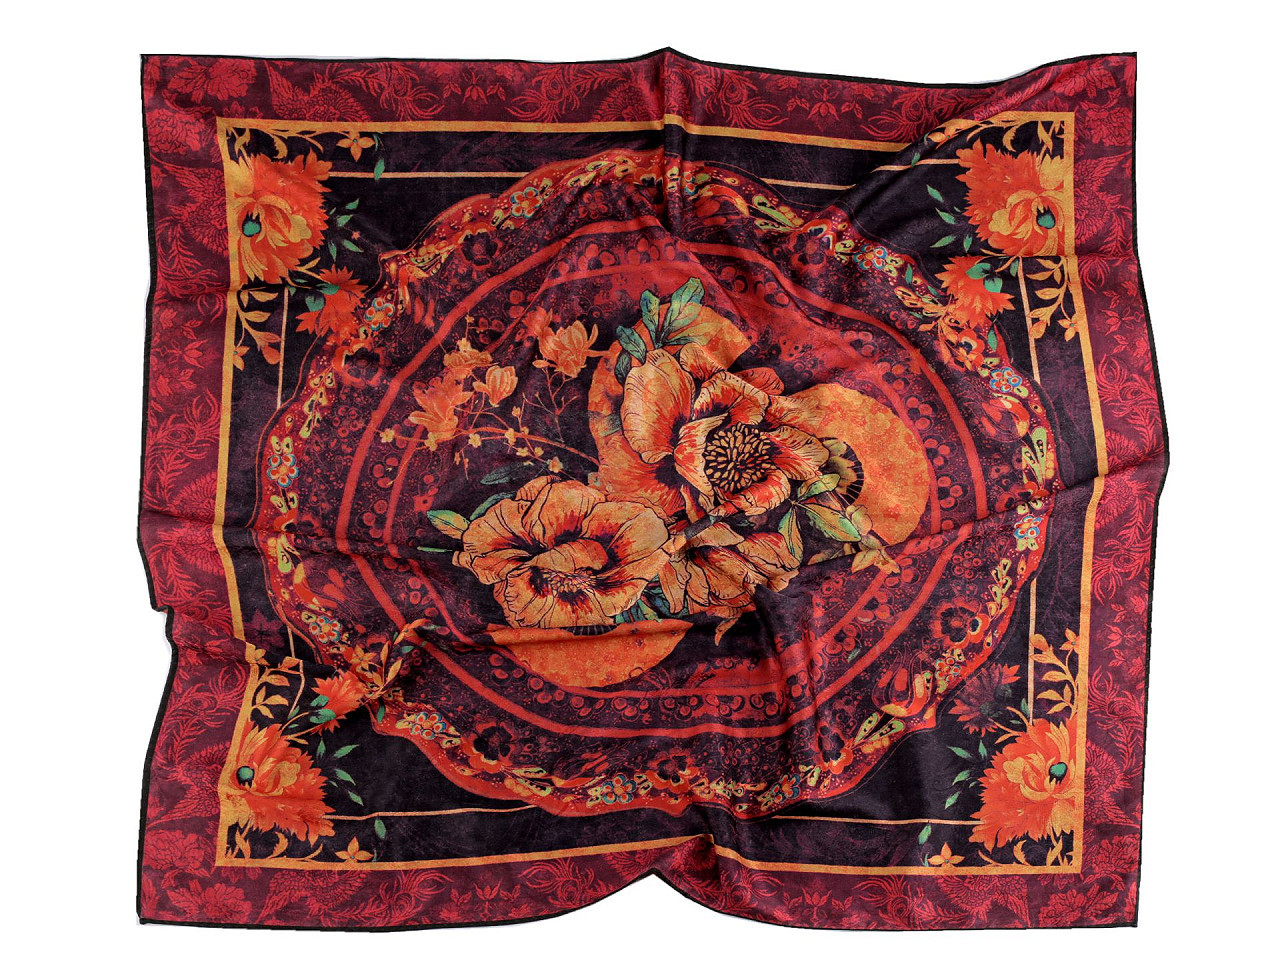 Saténový šátek 70x70 cm, barva 6 červená střední